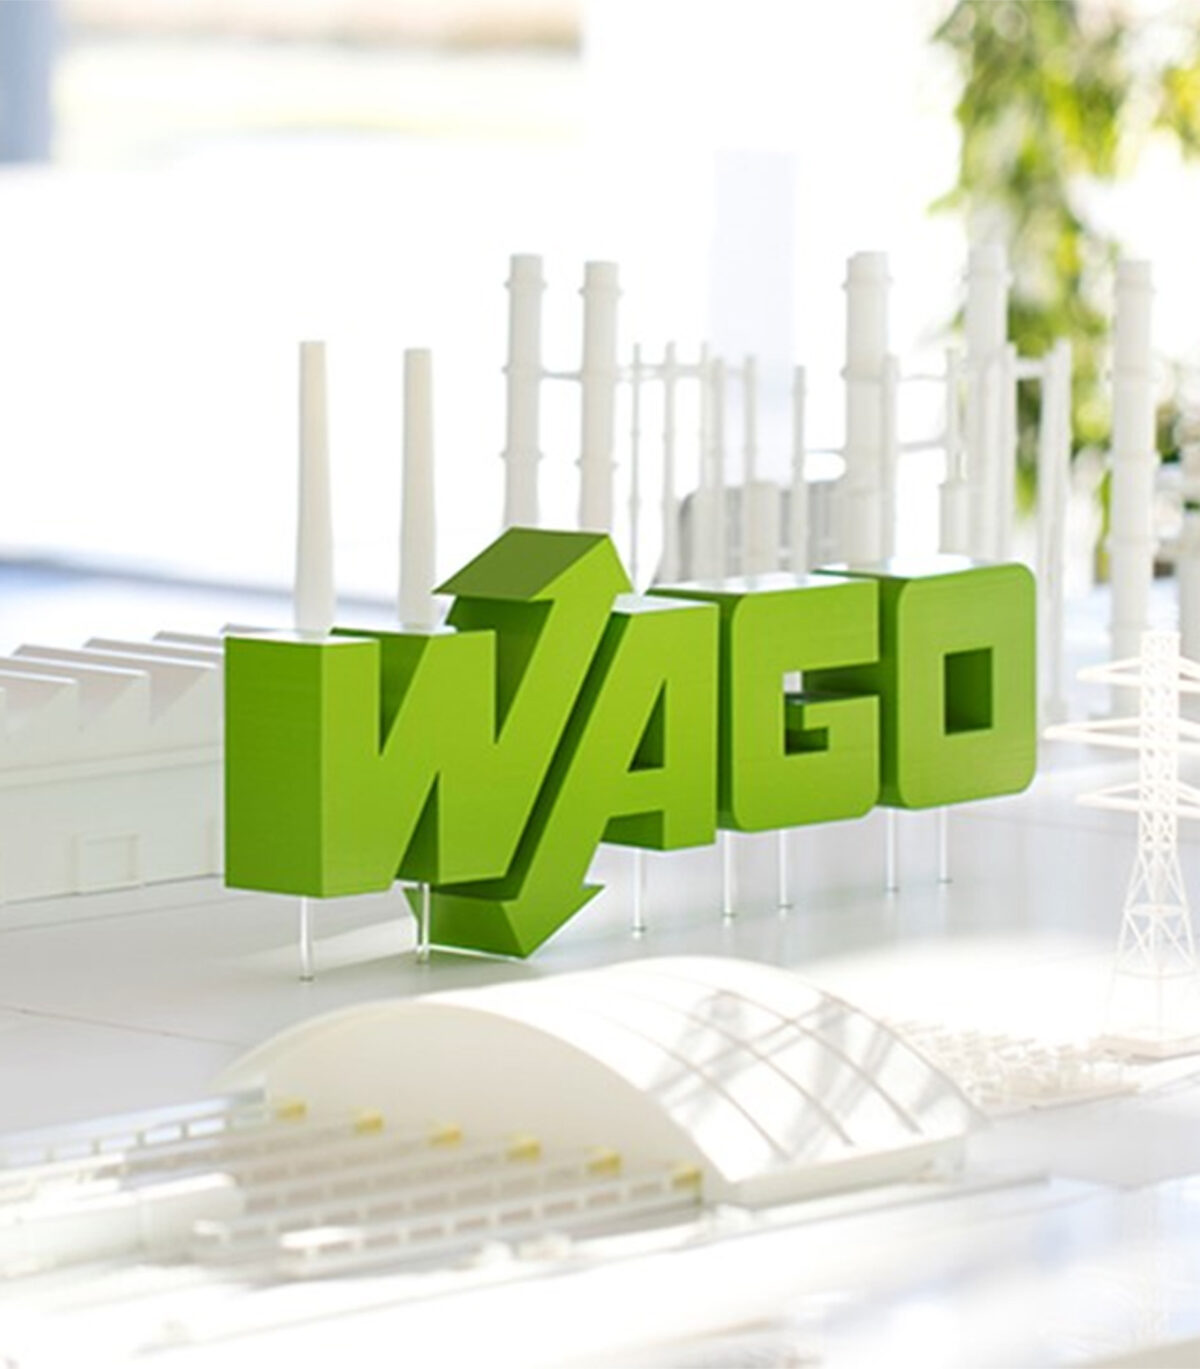 WAGO Logo in 3D